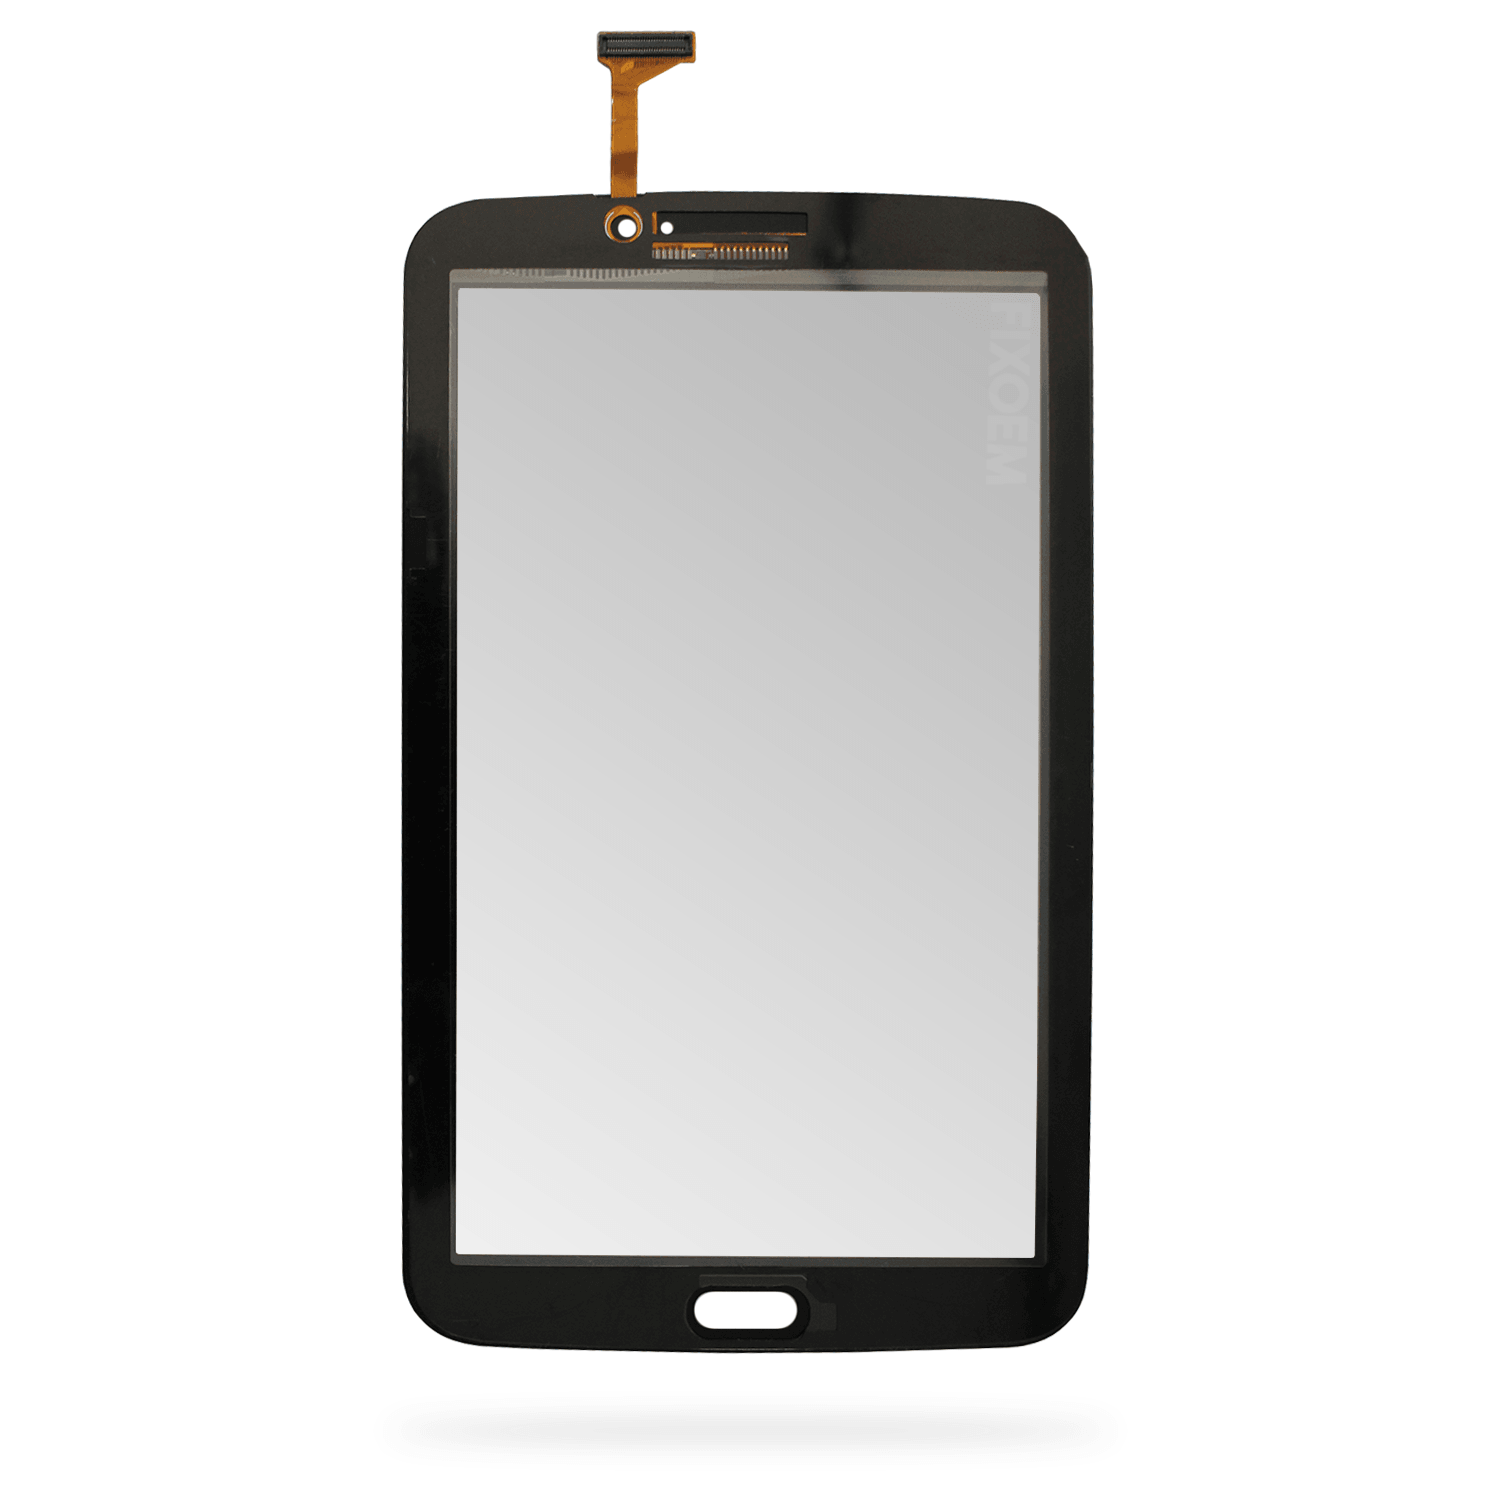 Touch Samsung Tab 3 T210 a solo $ 80.00 Refaccion y puestos celulares, refurbish y microelectronica.- FixOEM